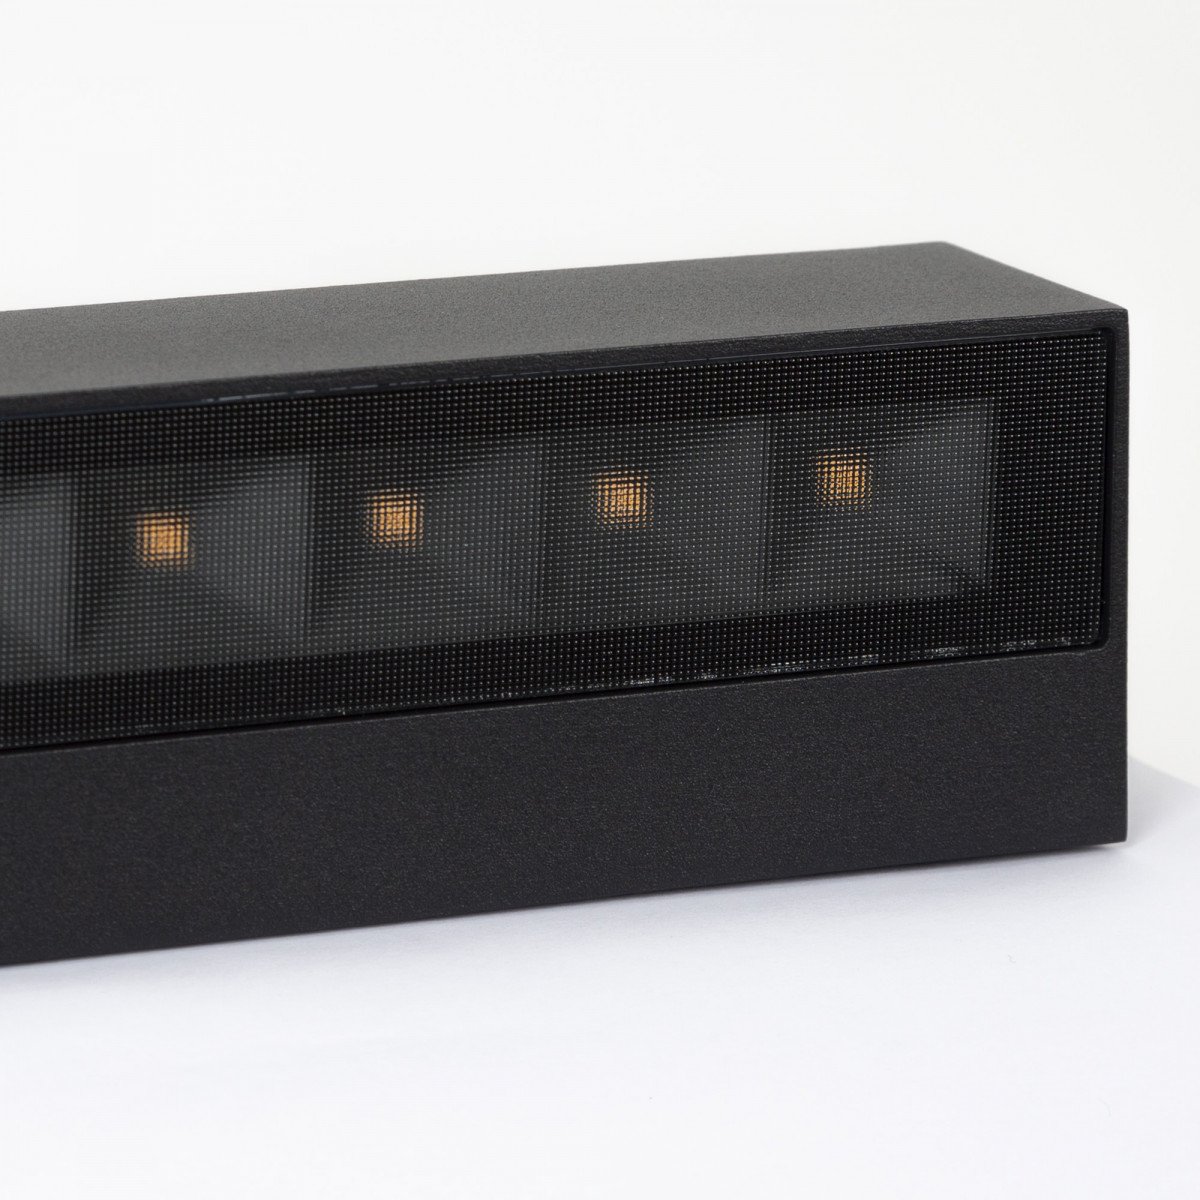 Muurspot score medium, LED gevelverlichting, up and downlighter, zwart